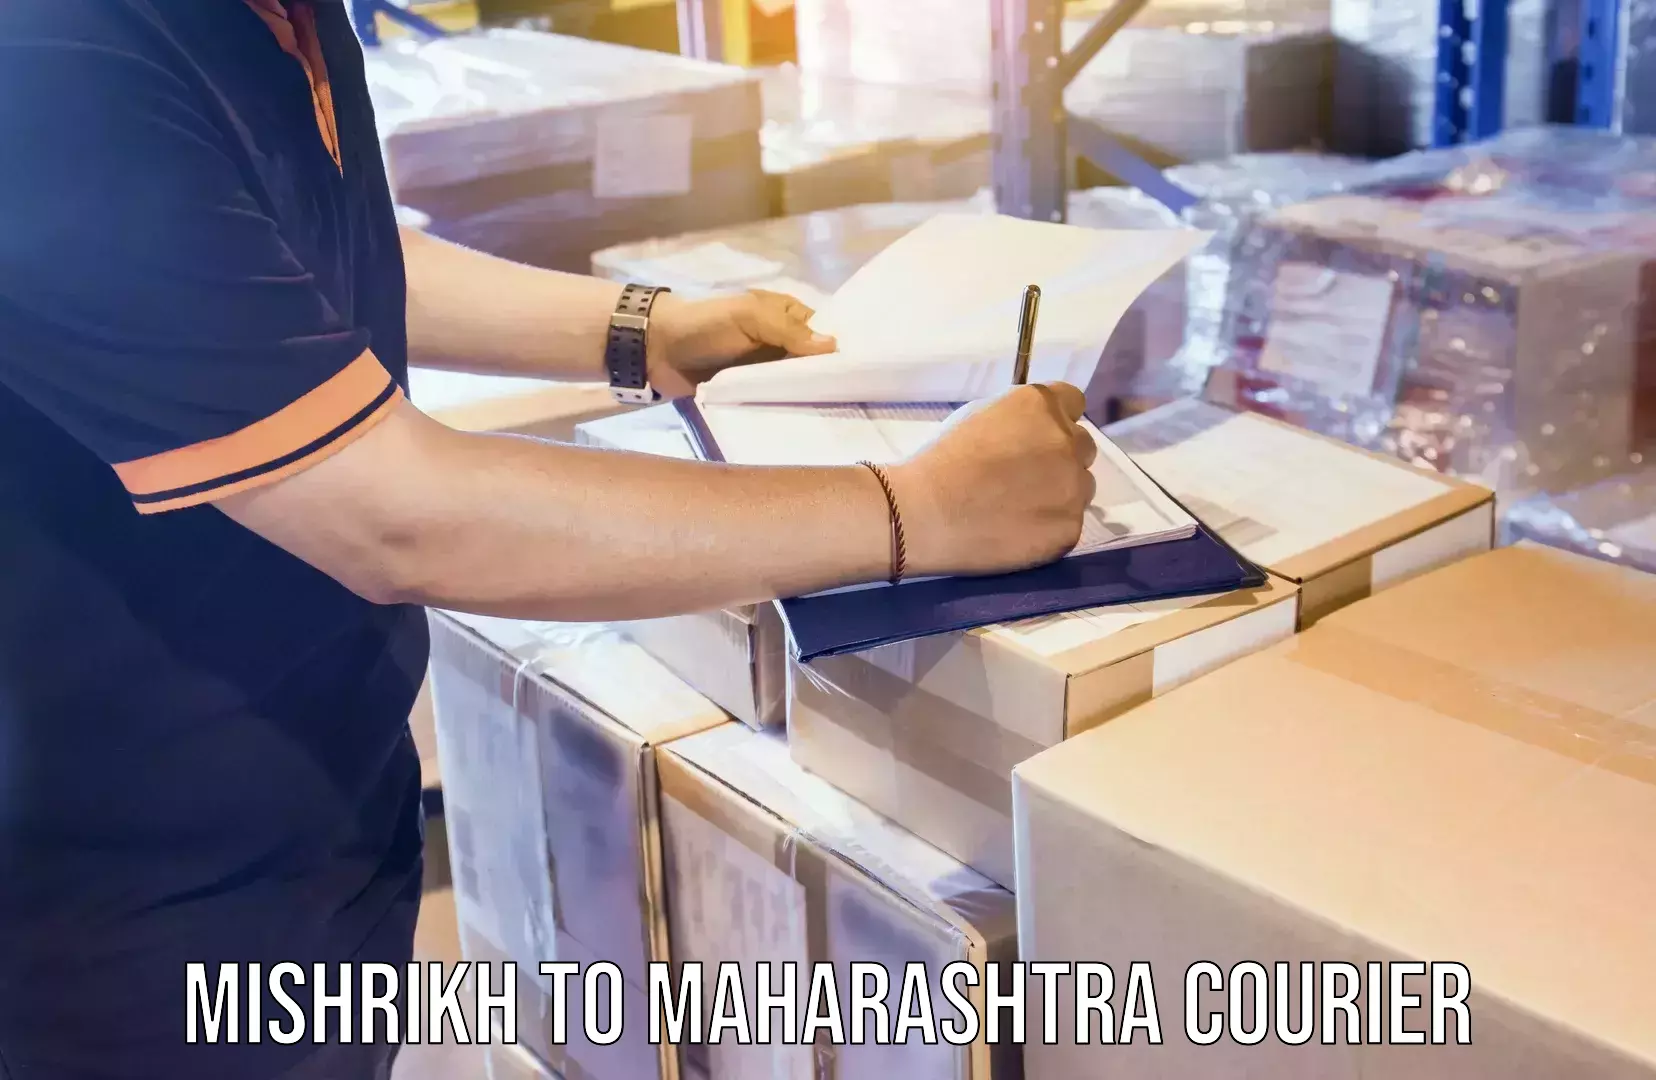 Professional moving assistance Mishrikh to Maharashtra